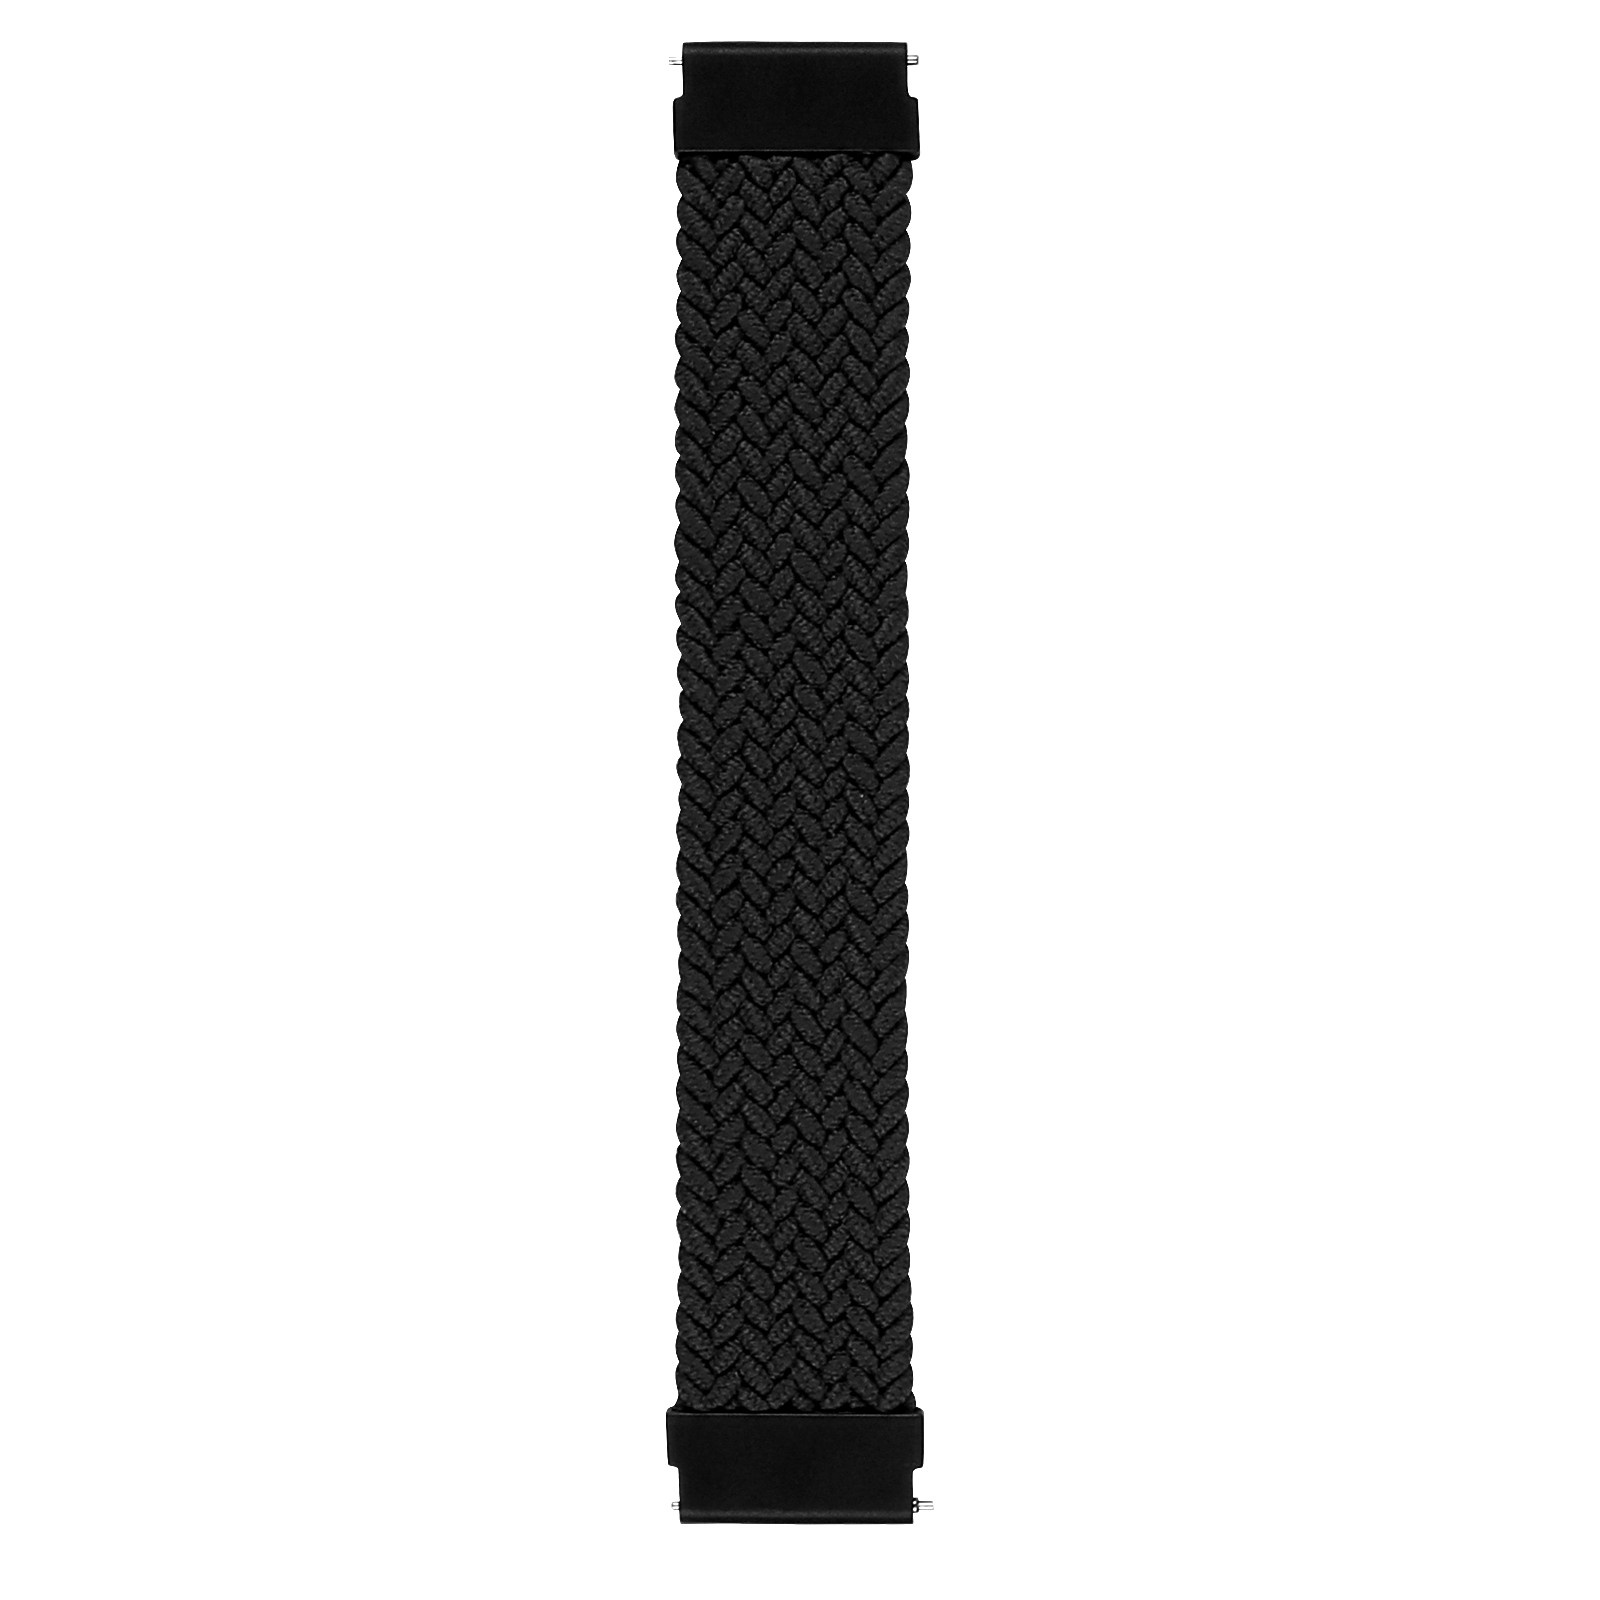 Samsung Galaxy Watch nylon gevlochten solo band - zwart